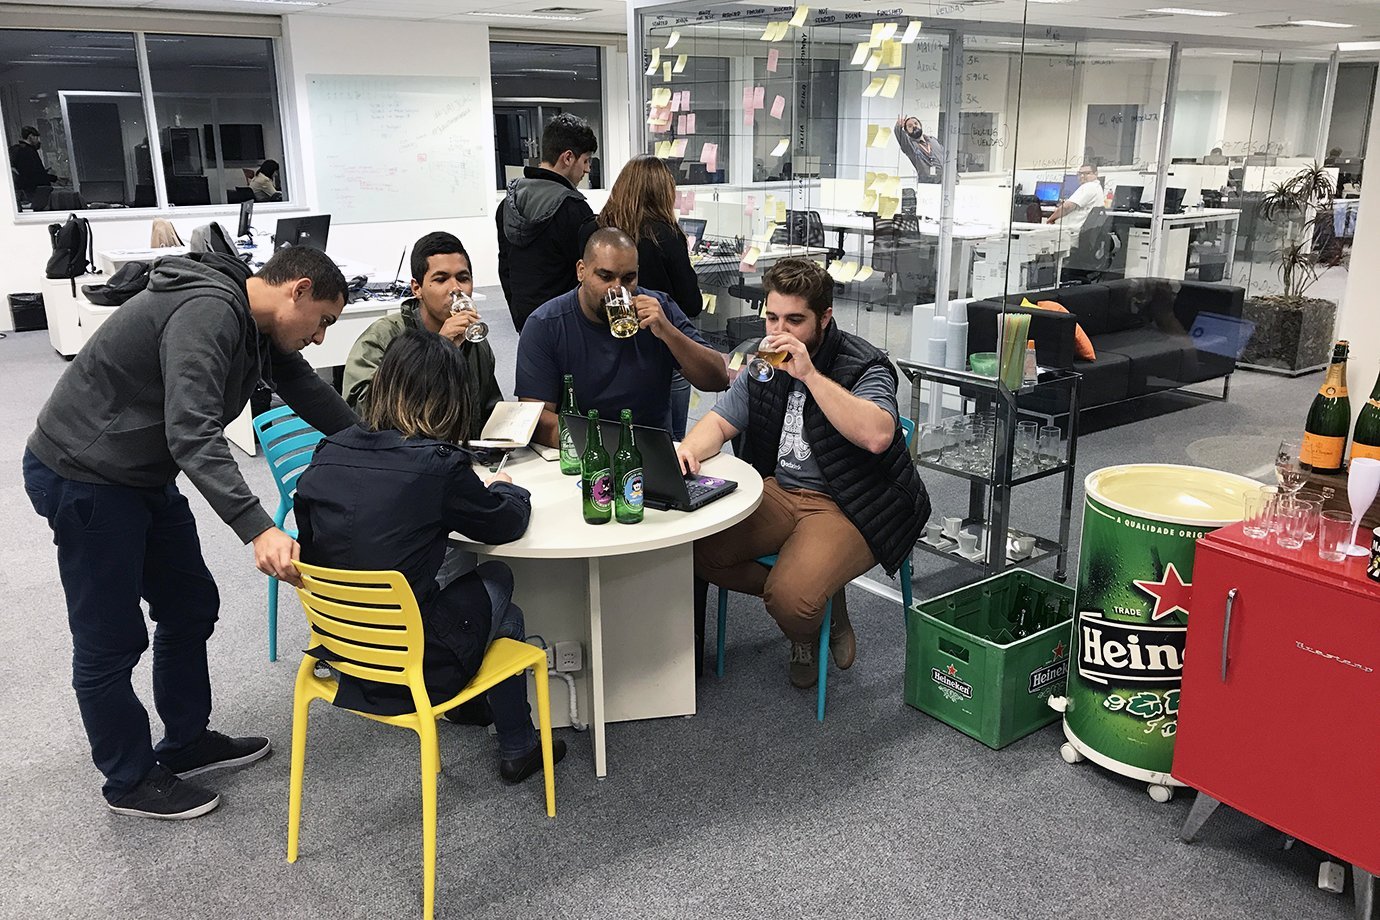 Funcionários bebem após o expediente, no escritório da Octadesk